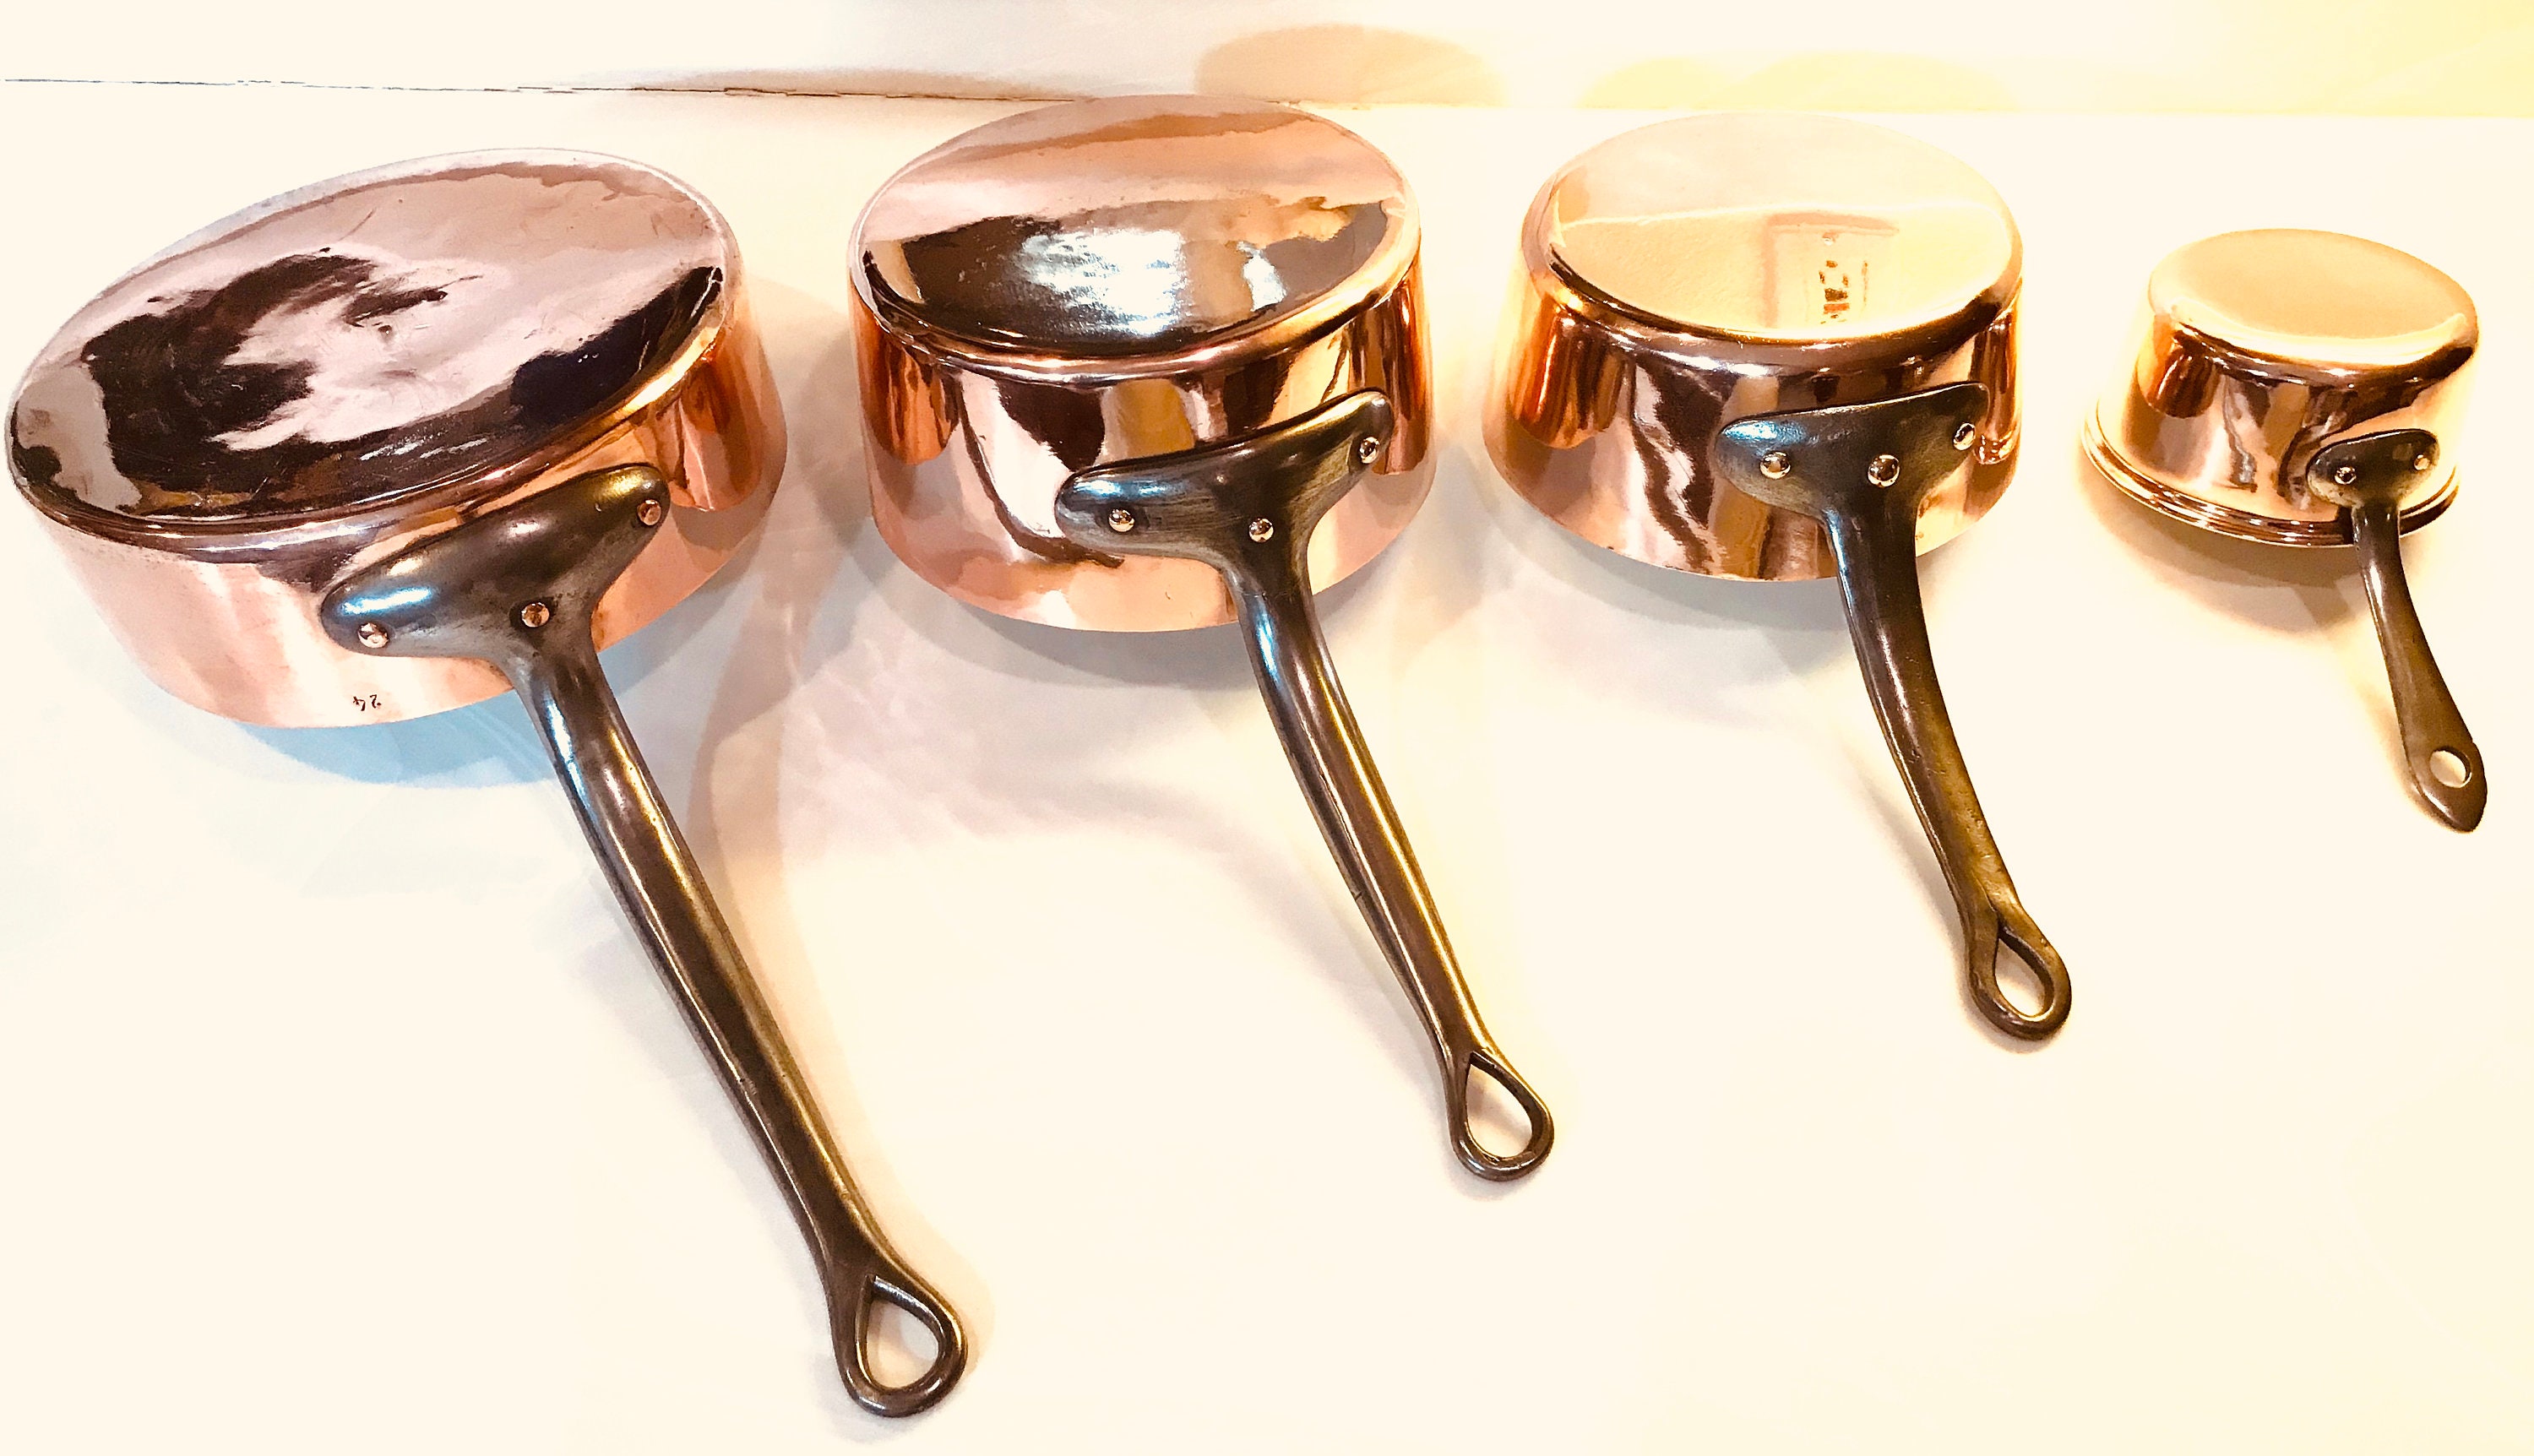 4 Français Copper Cookware Pan Set Rivets Metal Handles Stamped Paris, France